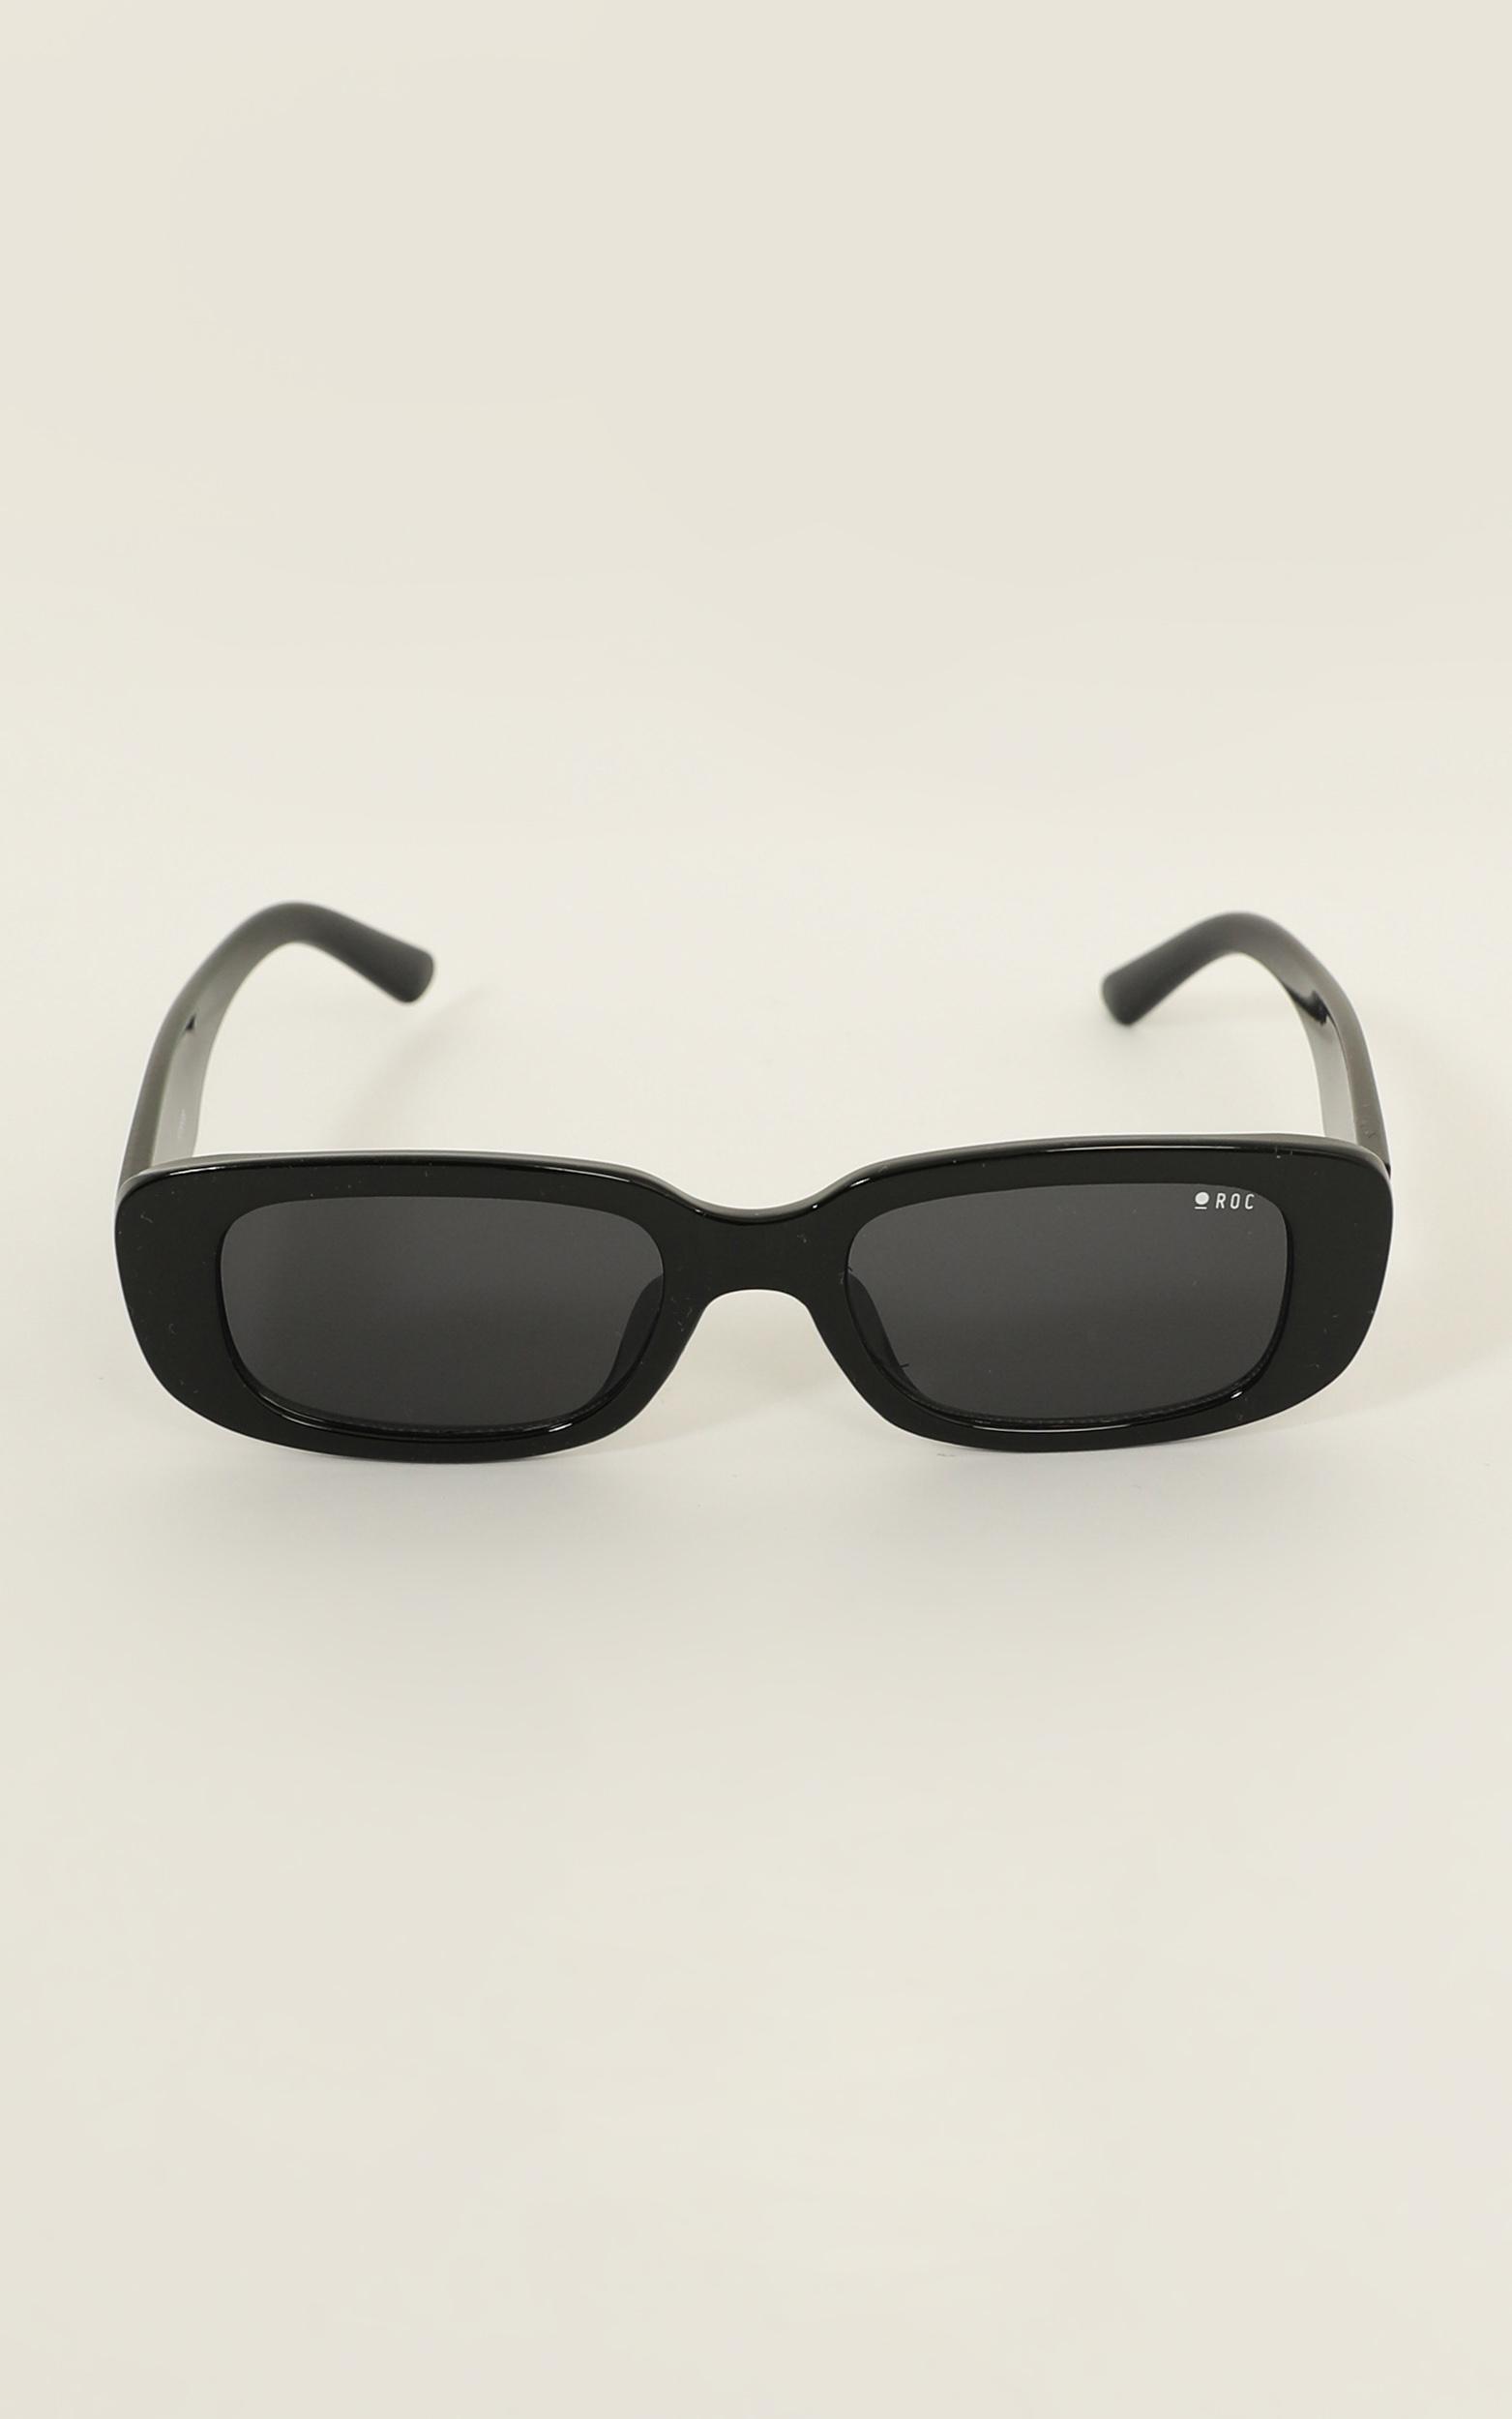 Roc - Creeper Sunglasses In Black | Showpo